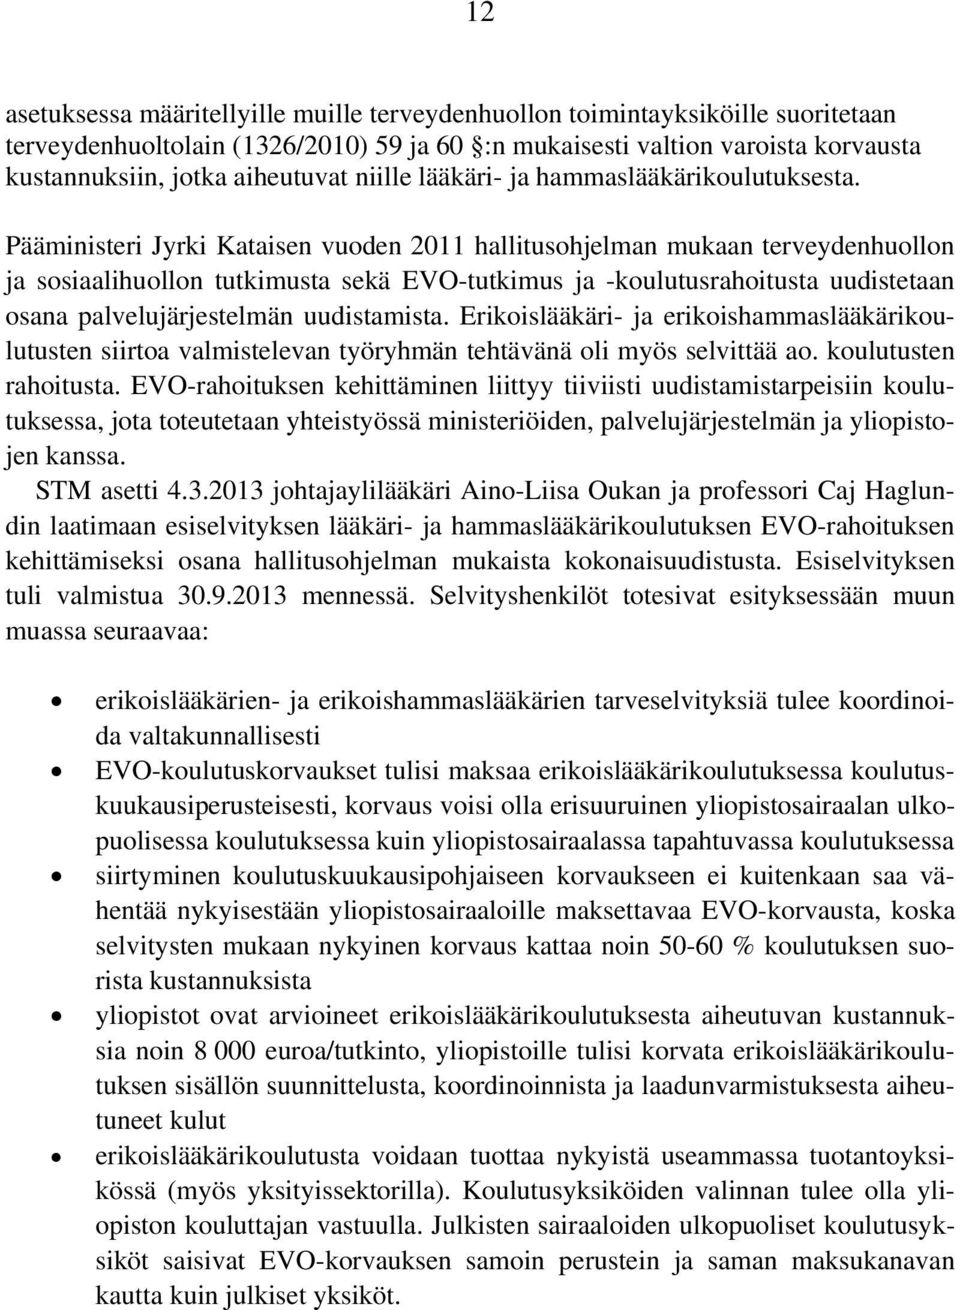 Pääministeri Jyrki Kataisen vuoden 2011 hallitusohjelman mukaan terveydenhuollon ja sosiaalihuollon tutkimusta sekä EVO-tutkimus ja -koulutusrahoitusta uudistetaan osana palvelujärjestelmän